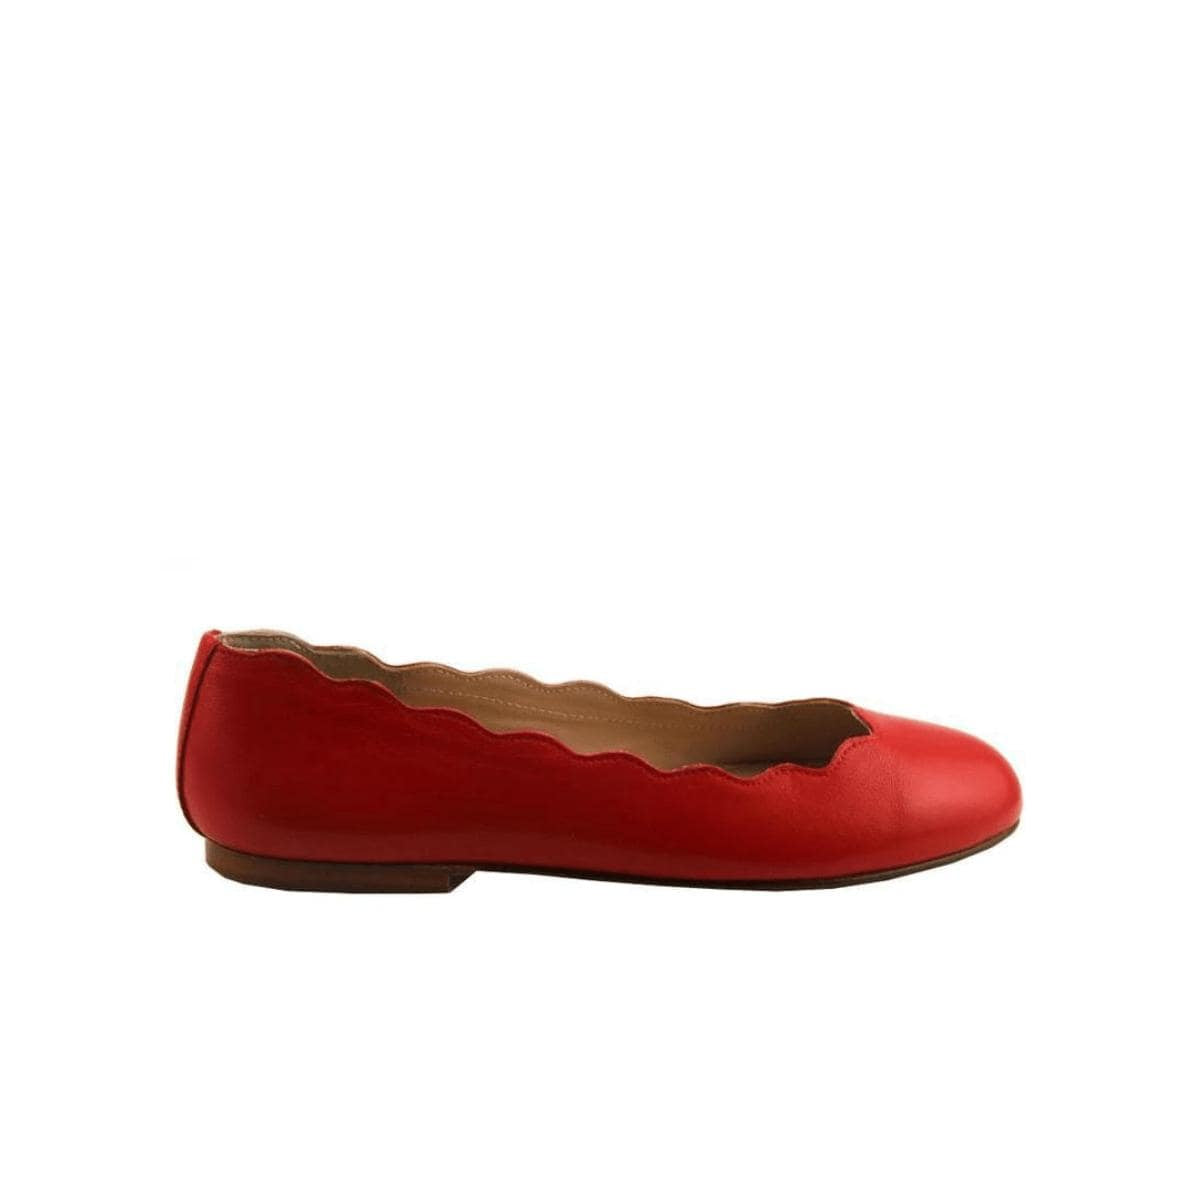 French Sole Women's Shoes FSNY Jigsaw Napa